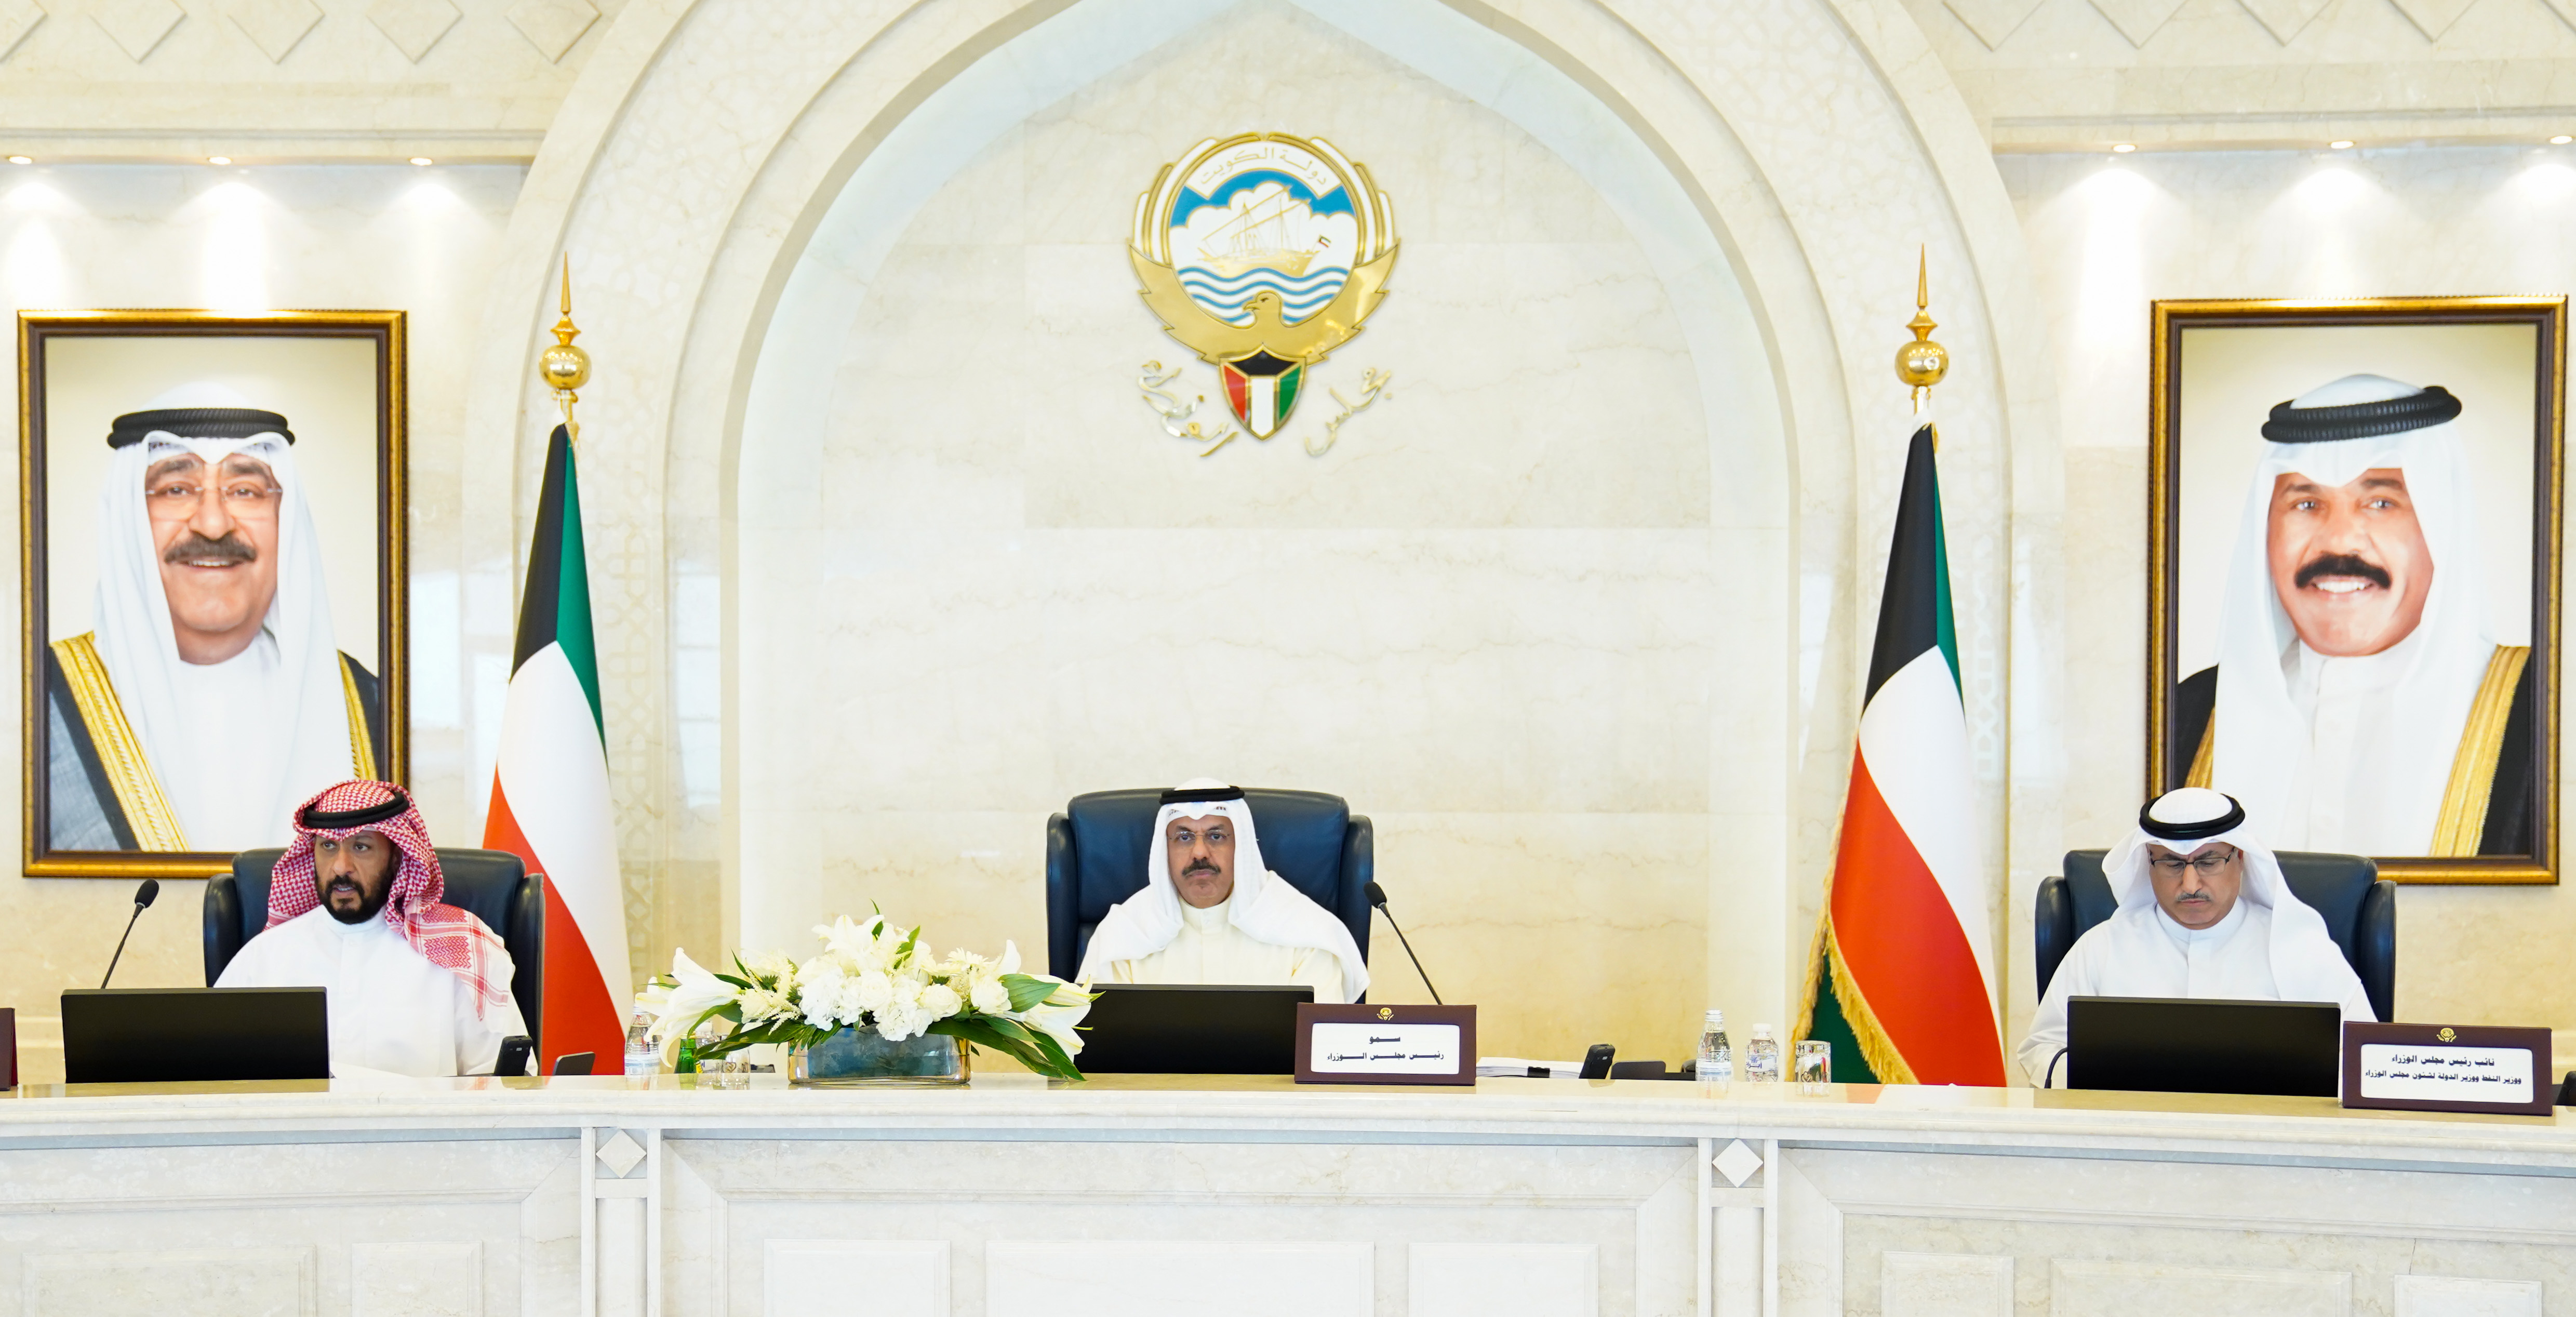 Kuwait's cabinet convenes weekly meeting